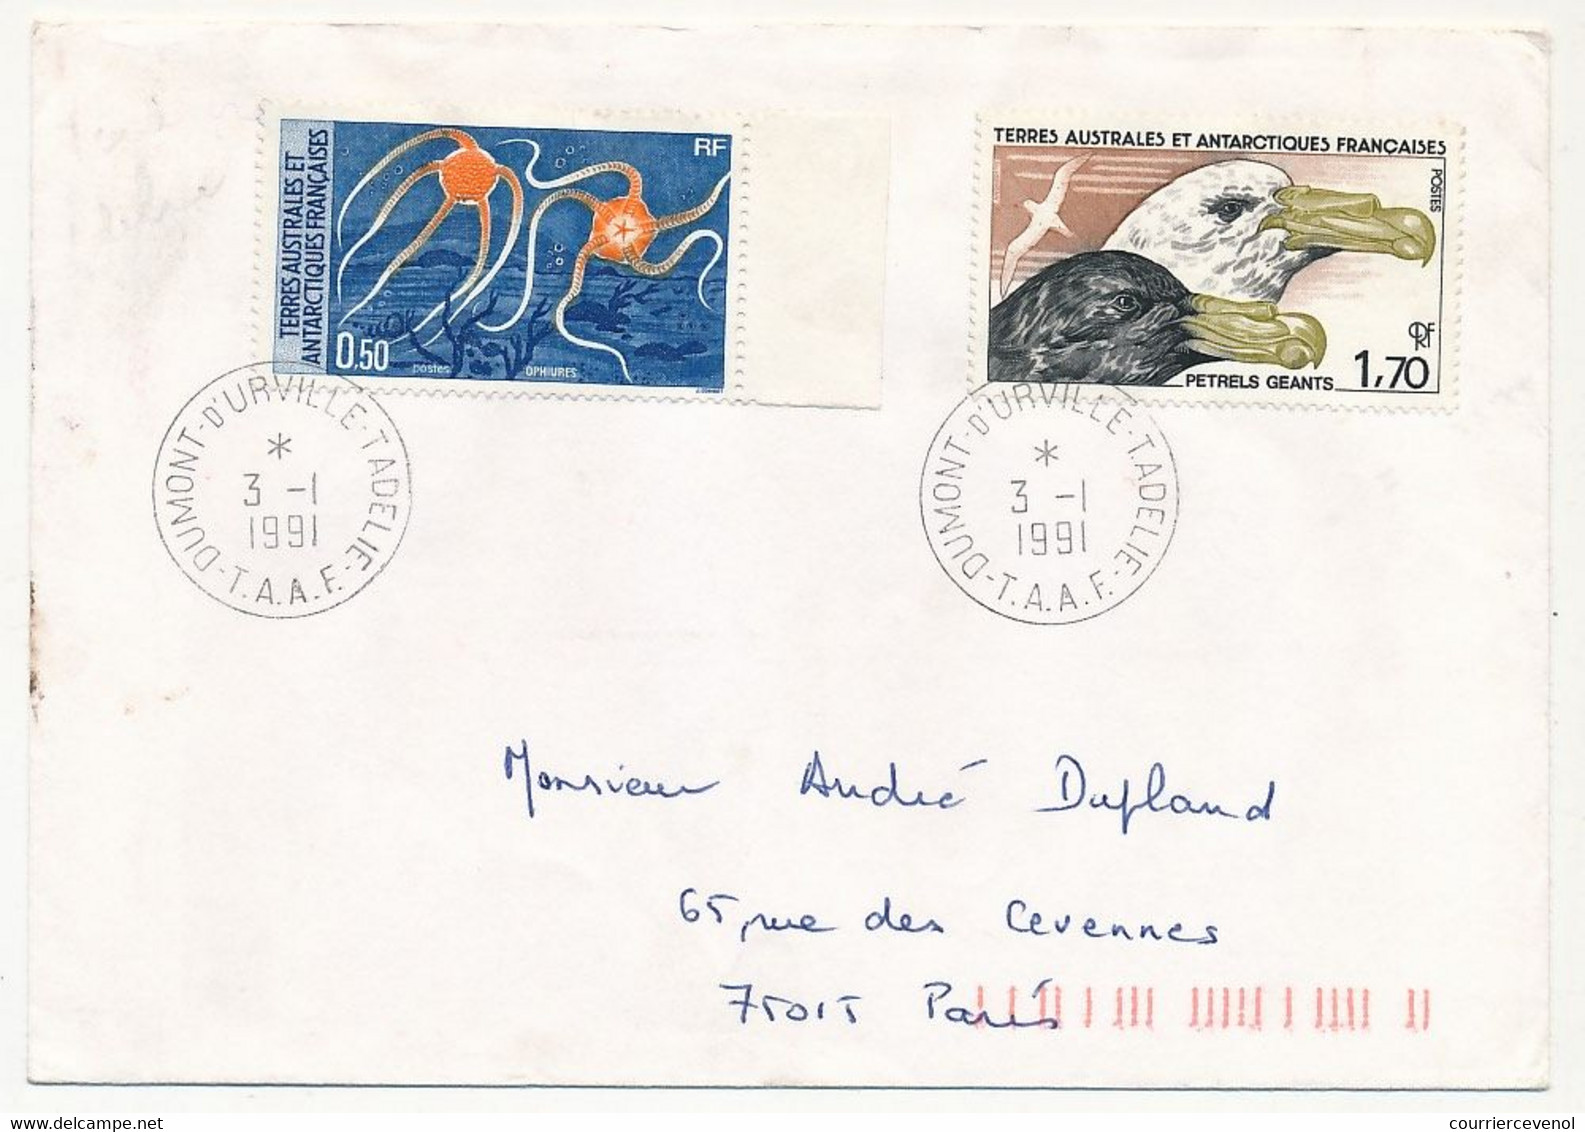 TAAF - Env. 1,70 Petrels Géants + 0,50 Ophiures - Dumont D'Urville T. Adélie - 3/1/1991 - Lettres & Documents